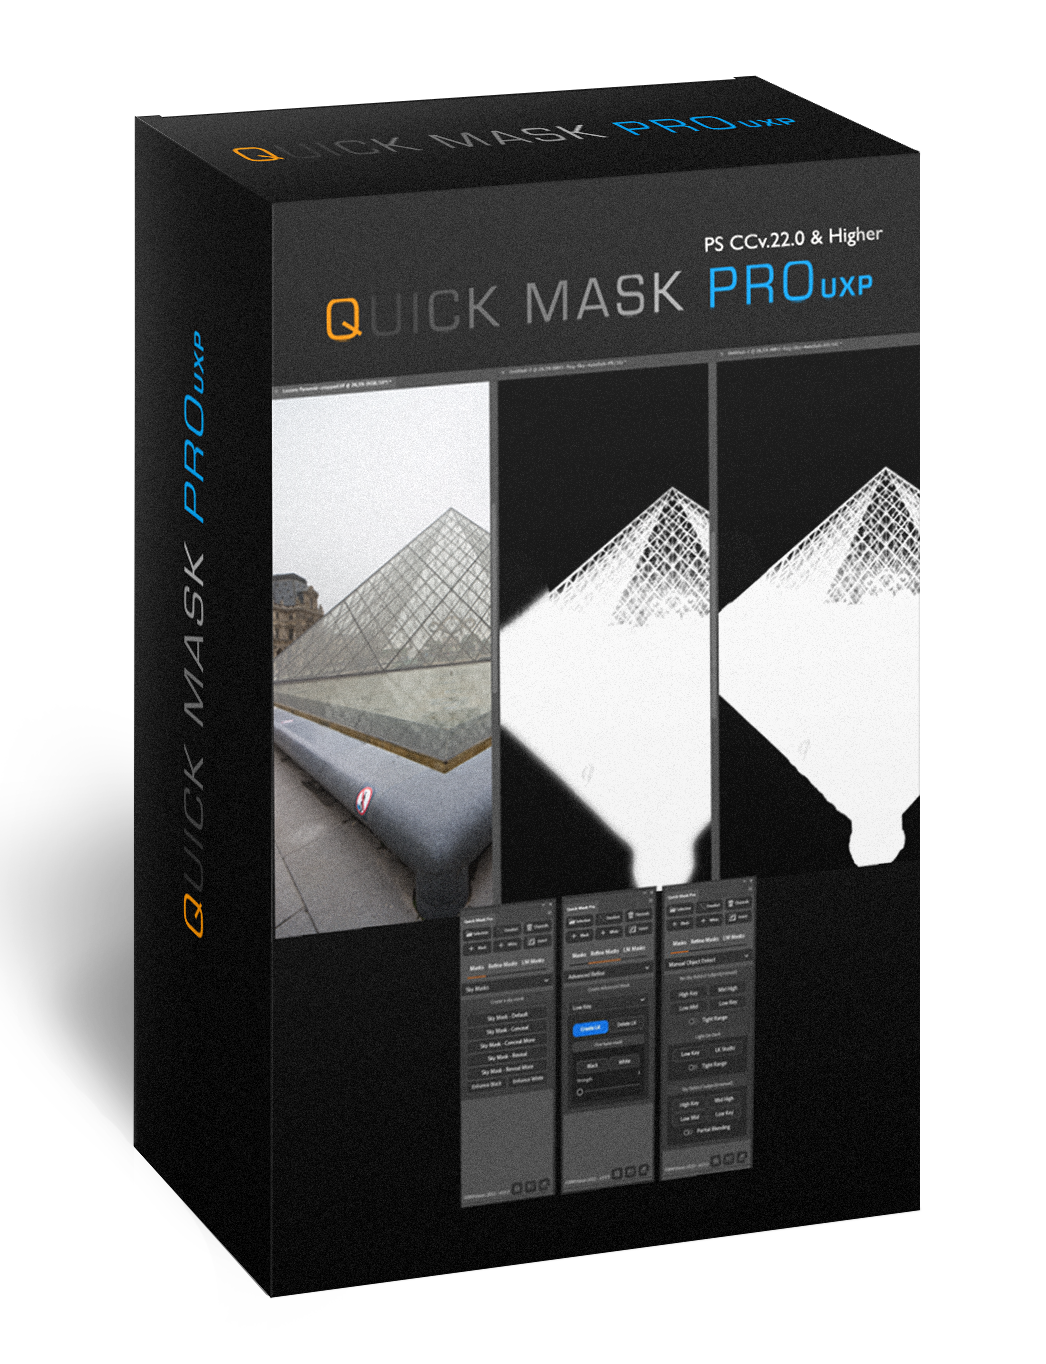 Quick mask pro panel for photoshop masking software